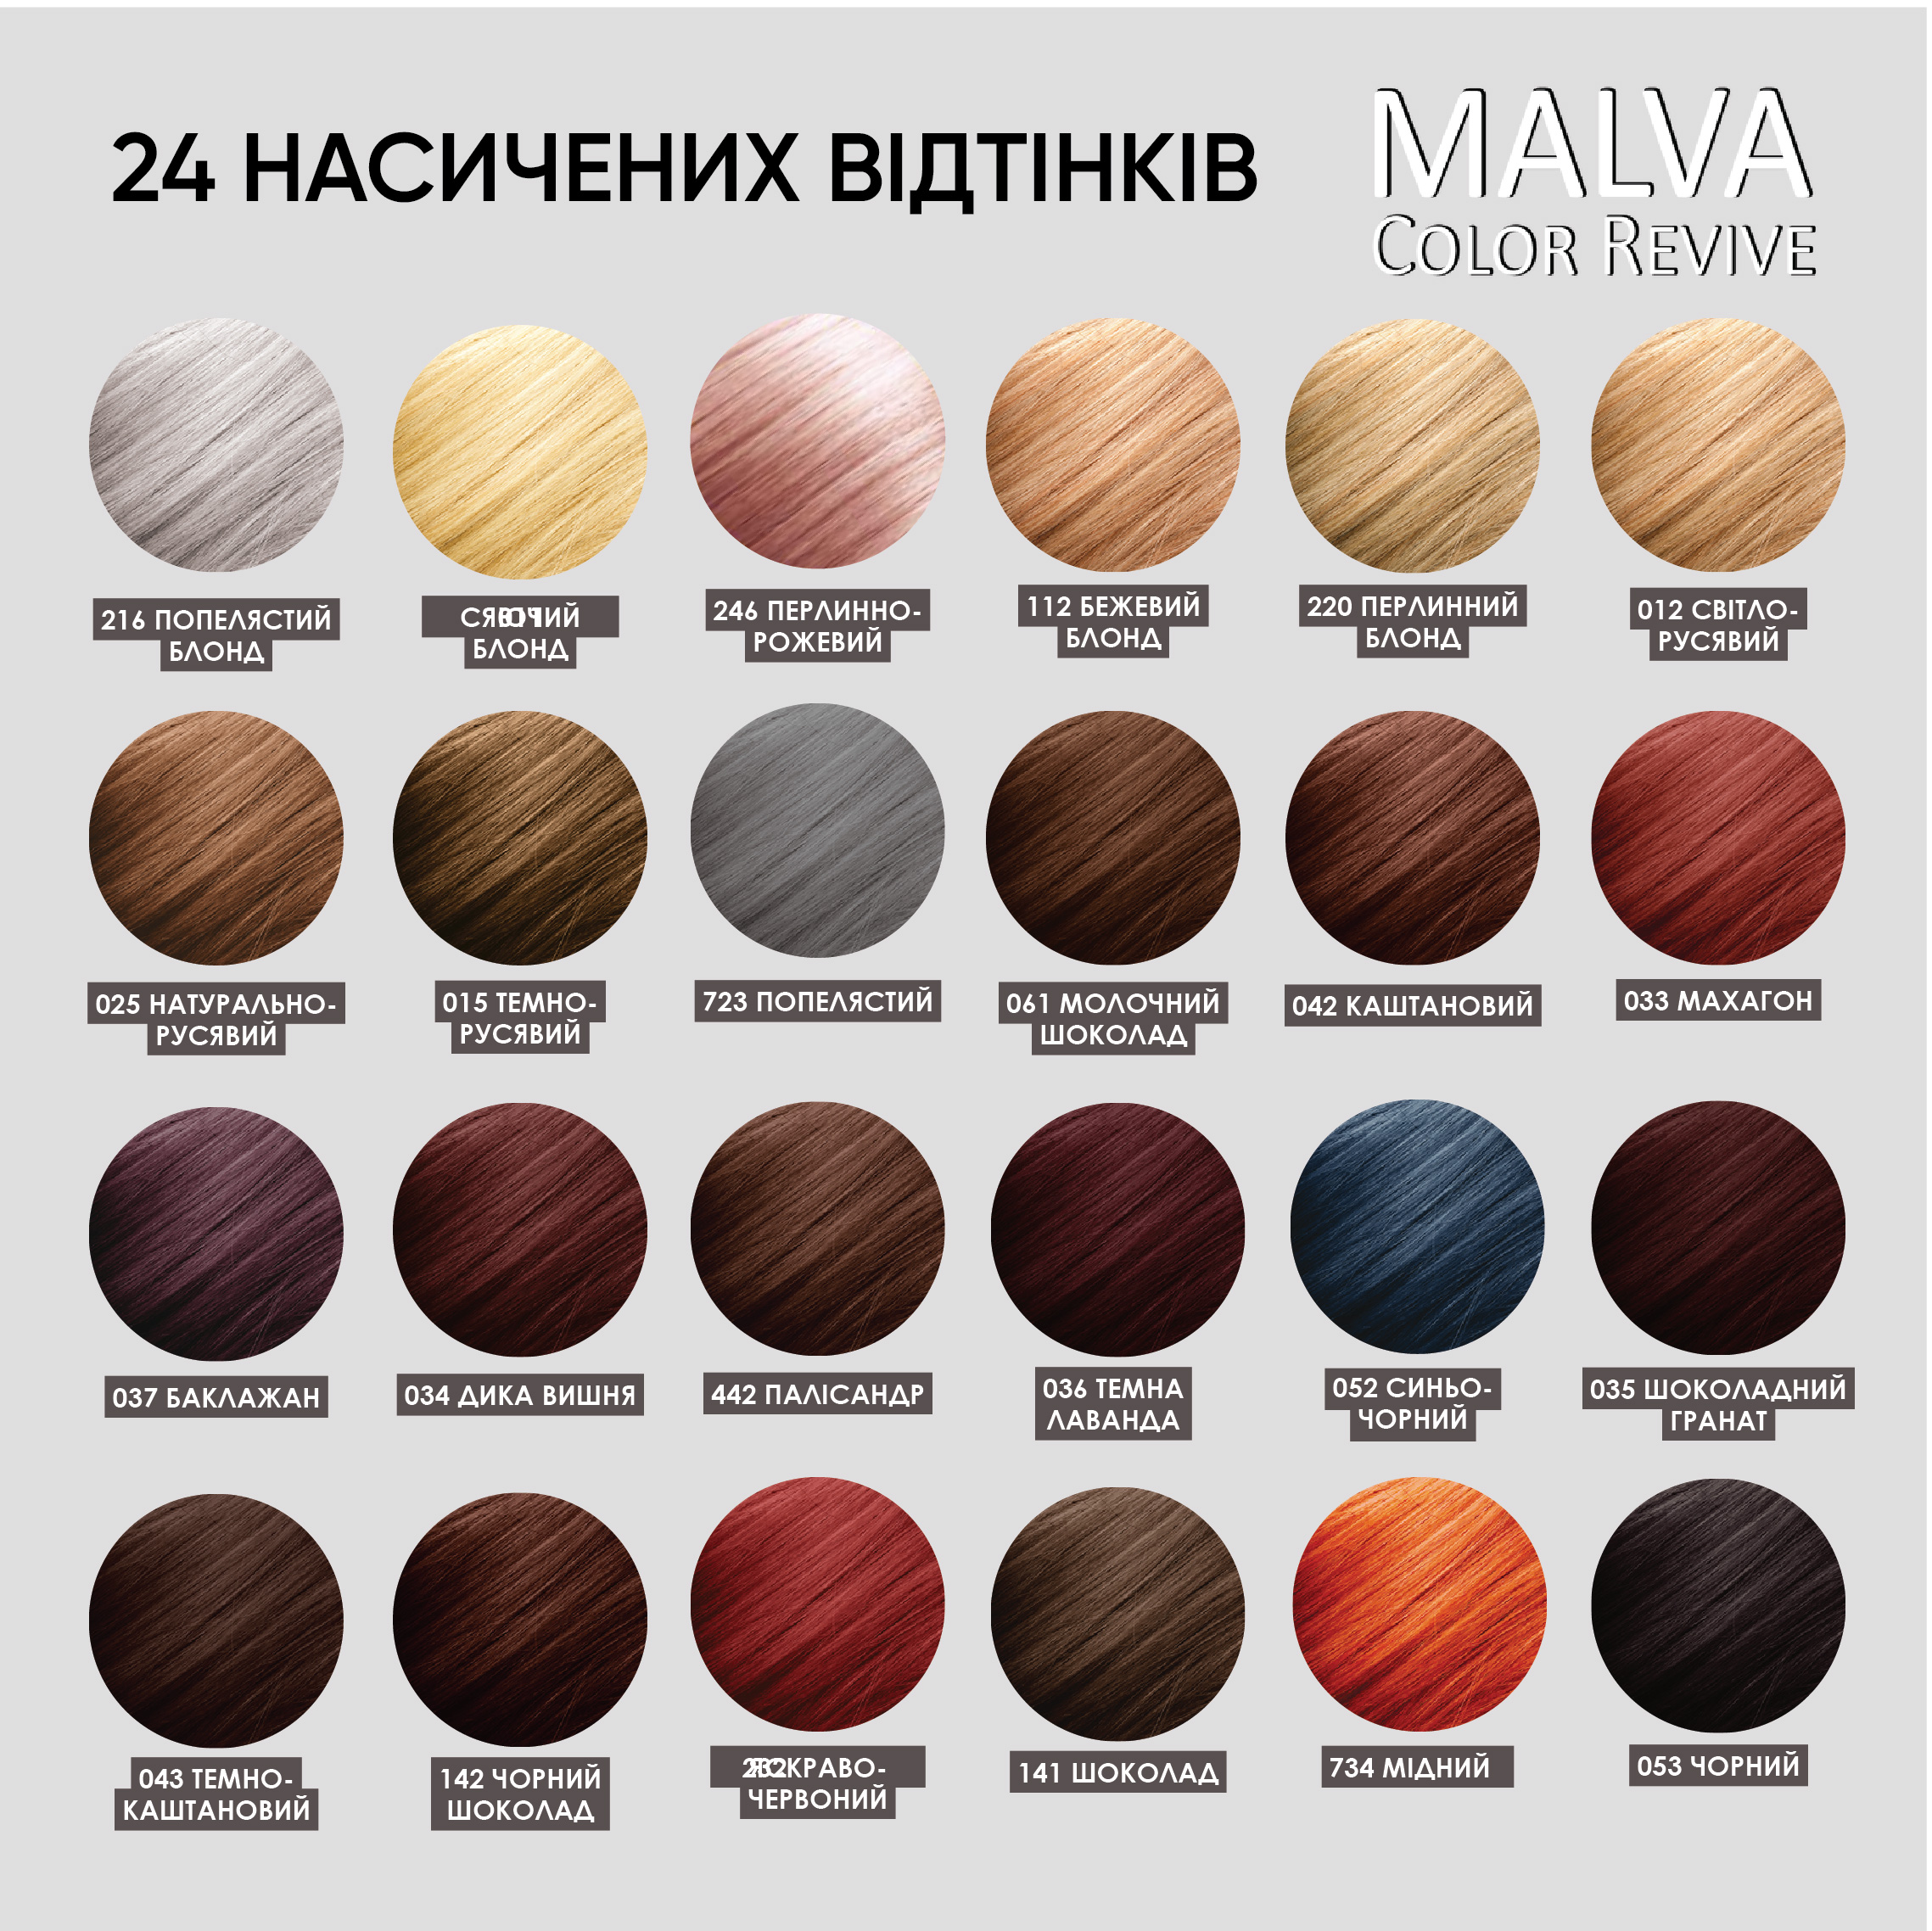 Стійка крем-фарба для волосся Malva Color Revive відтінок 723 Попелястий - фото 6